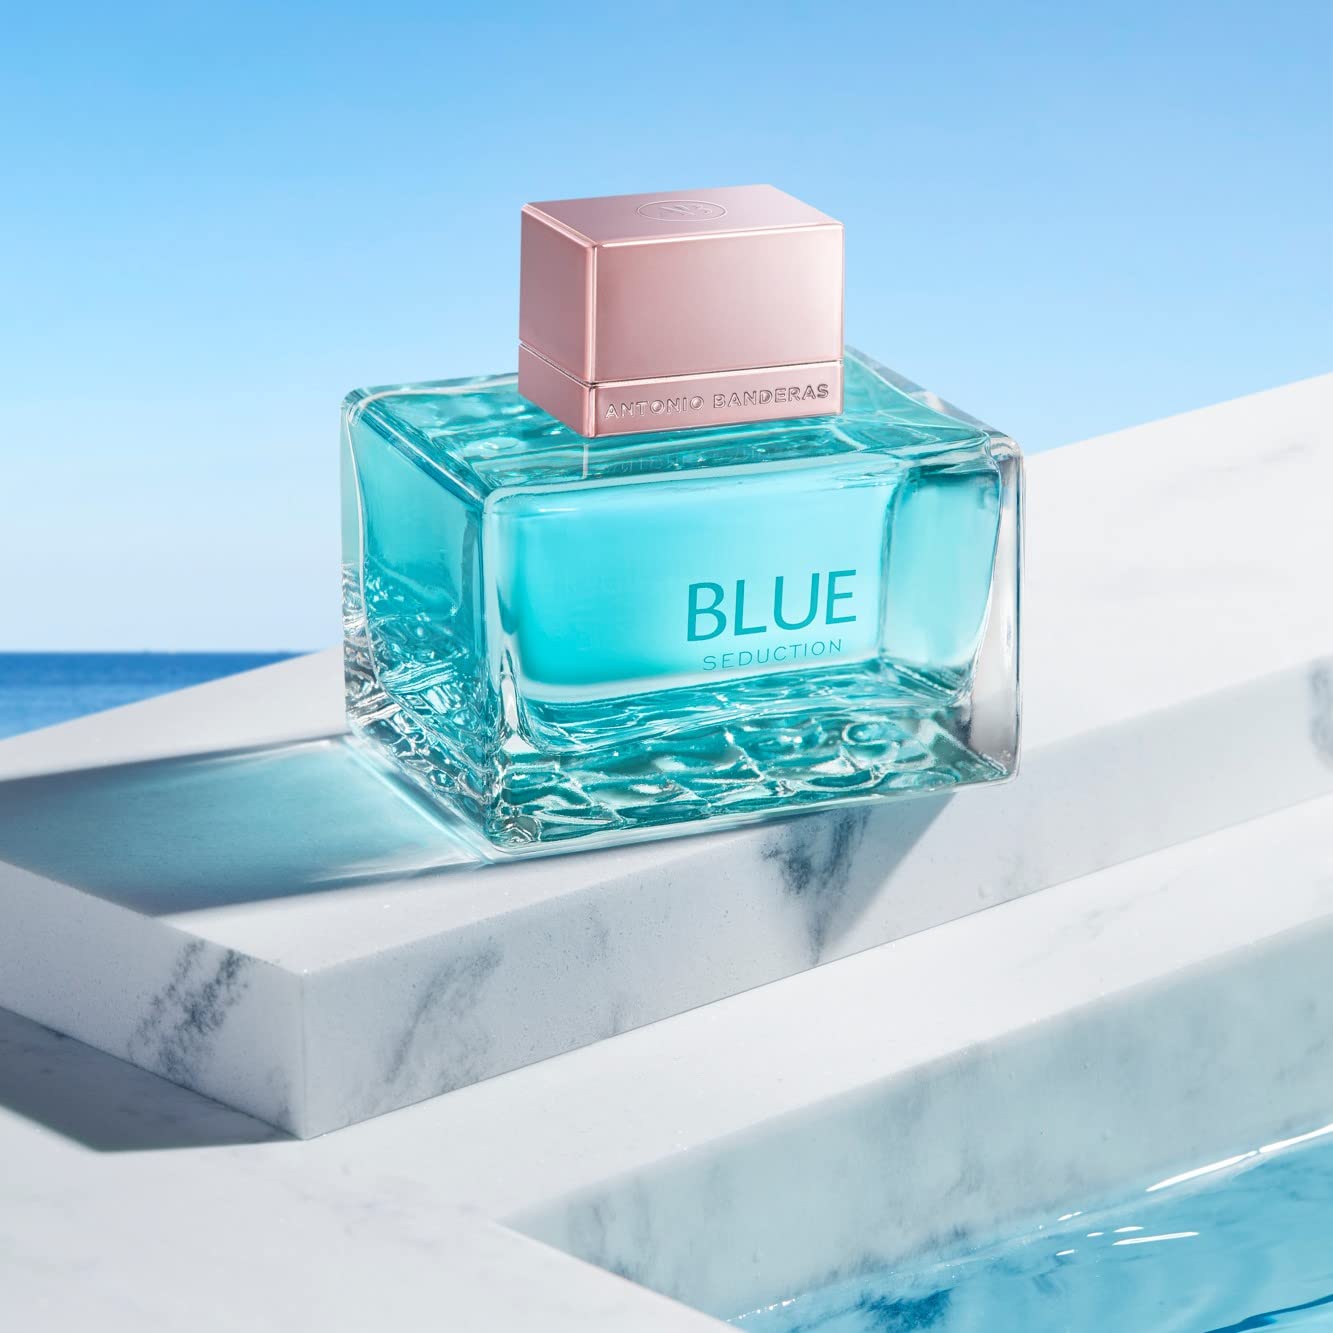 Perfume para Mujer Antonio Banderas Blue Seduction 80ML